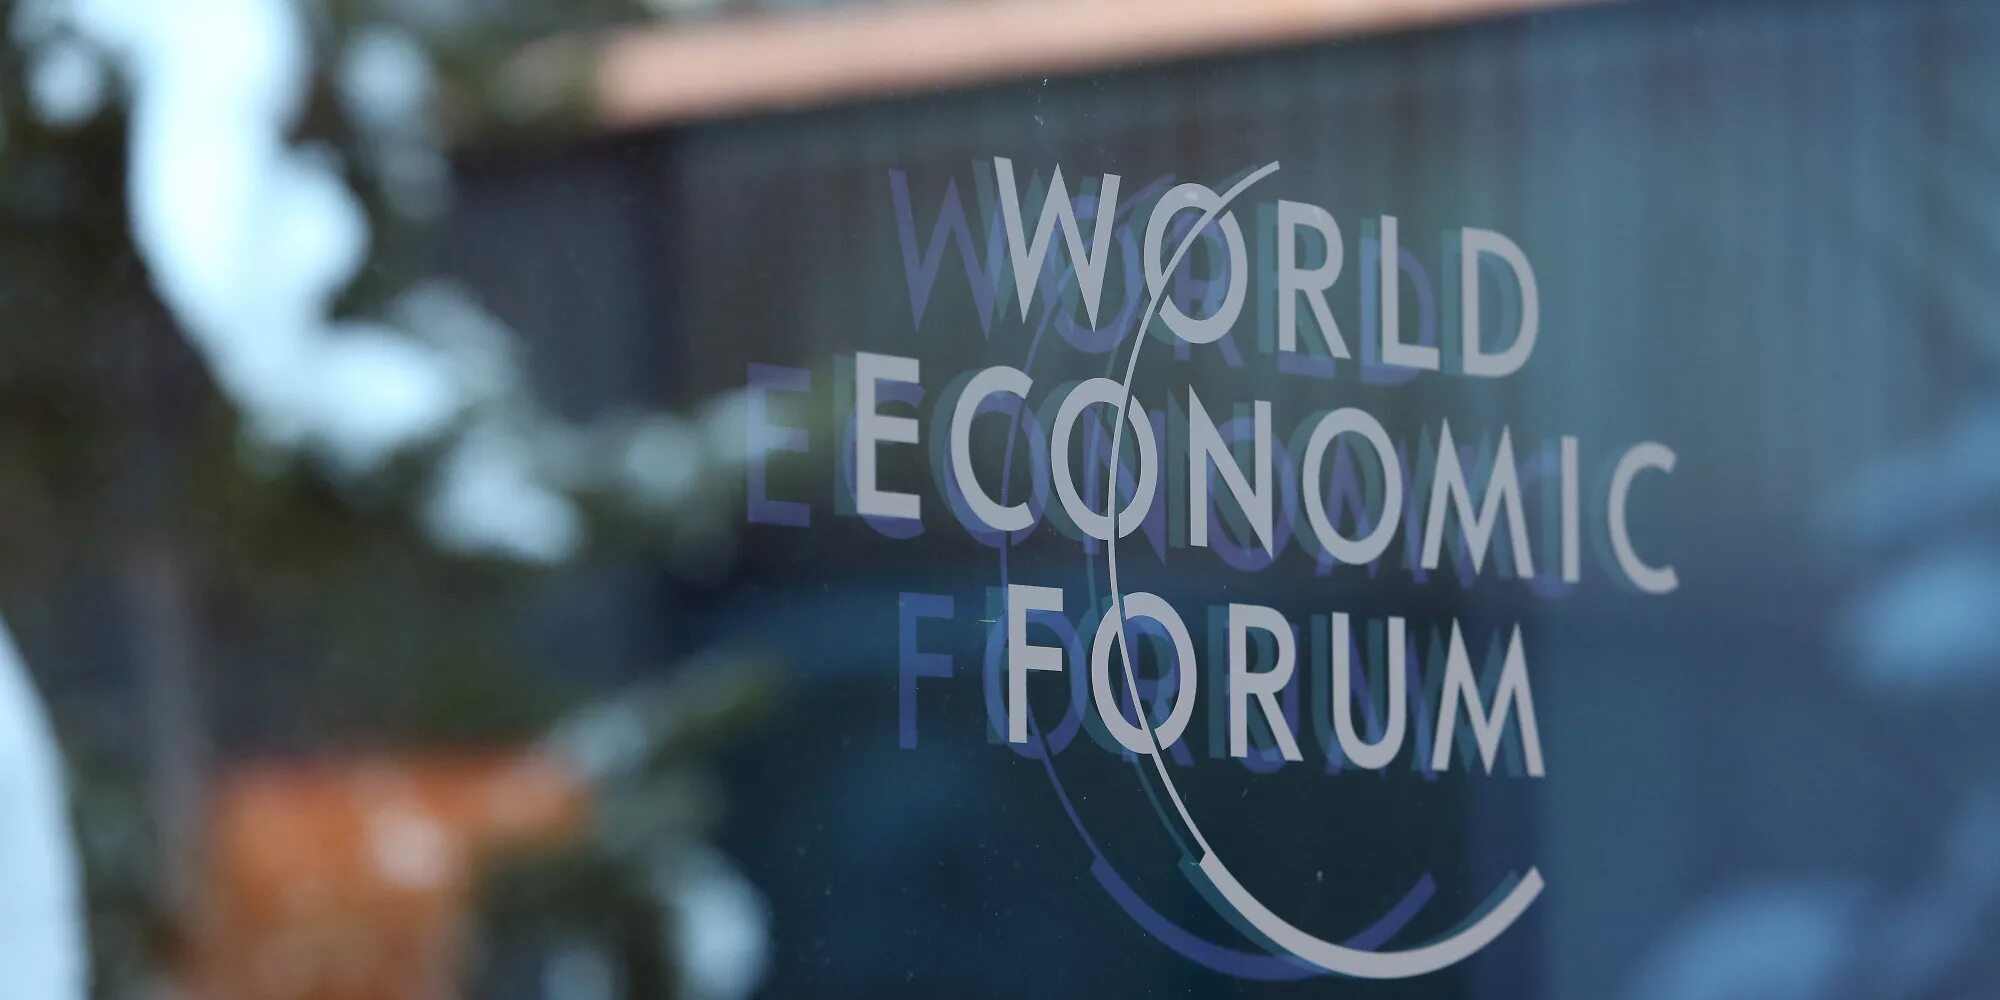 Ne fora. Всемирный экономический форум. World economic forum. Всемирный экономический форум ( Давосский). World economic forum логотип.